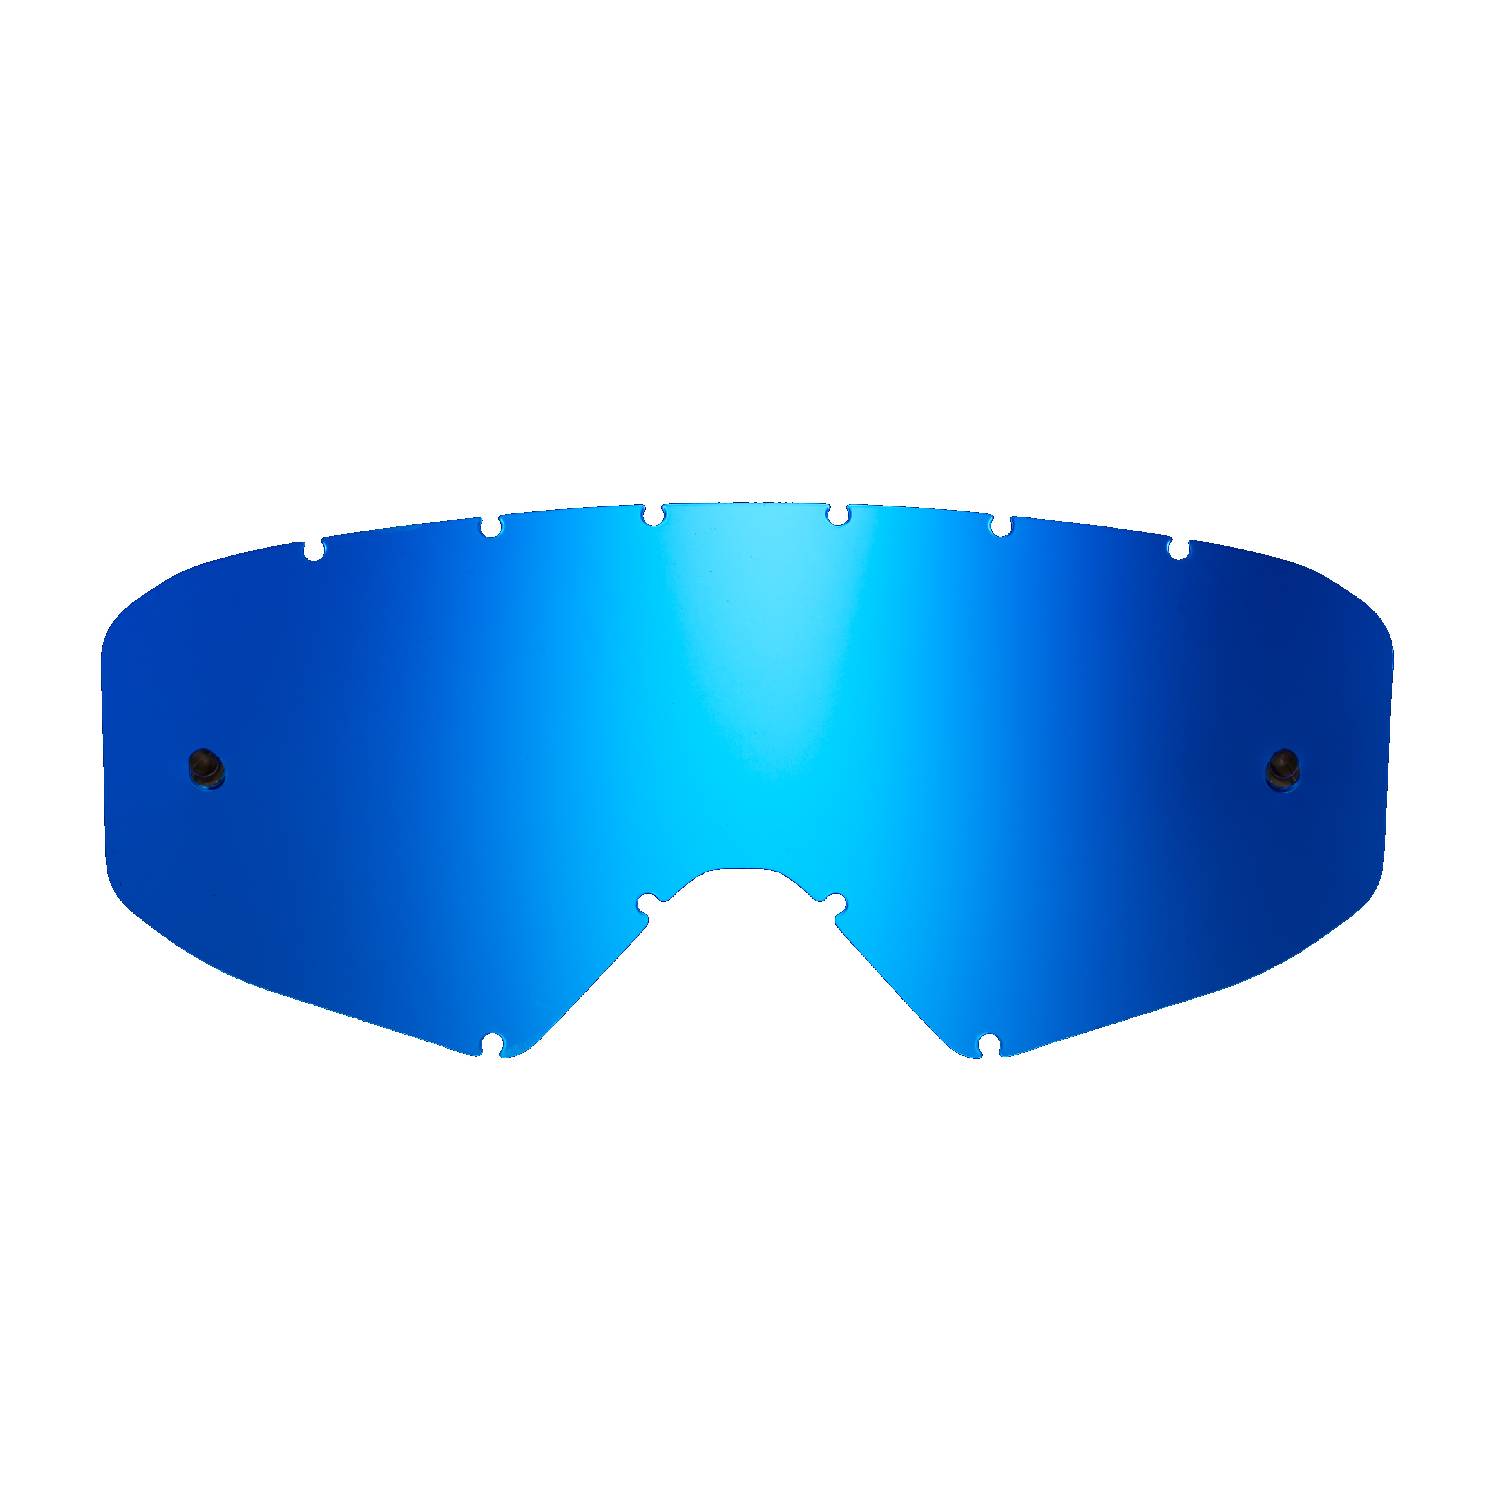 Lente di ricambio blu specchiato compatibile per occhiale/maschera cross Ethen Zerocinque Primis / R / Ares / Ares Pluma